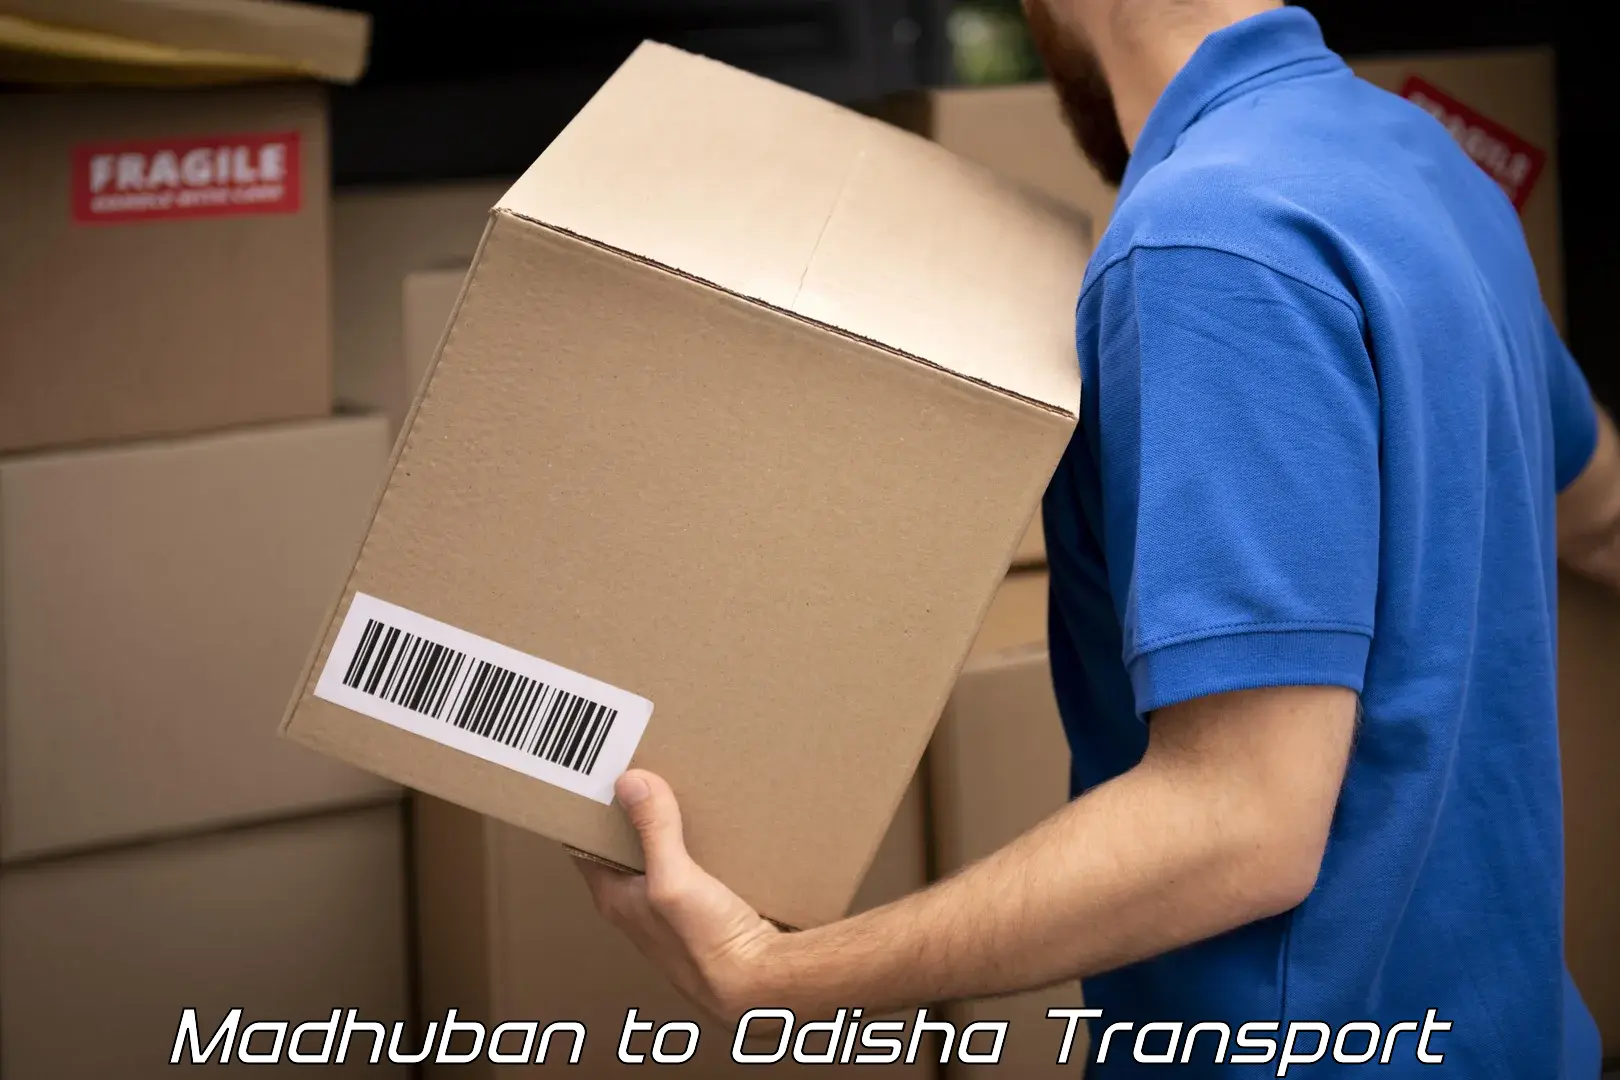 International cargo transportation services Madhuban to Odisha